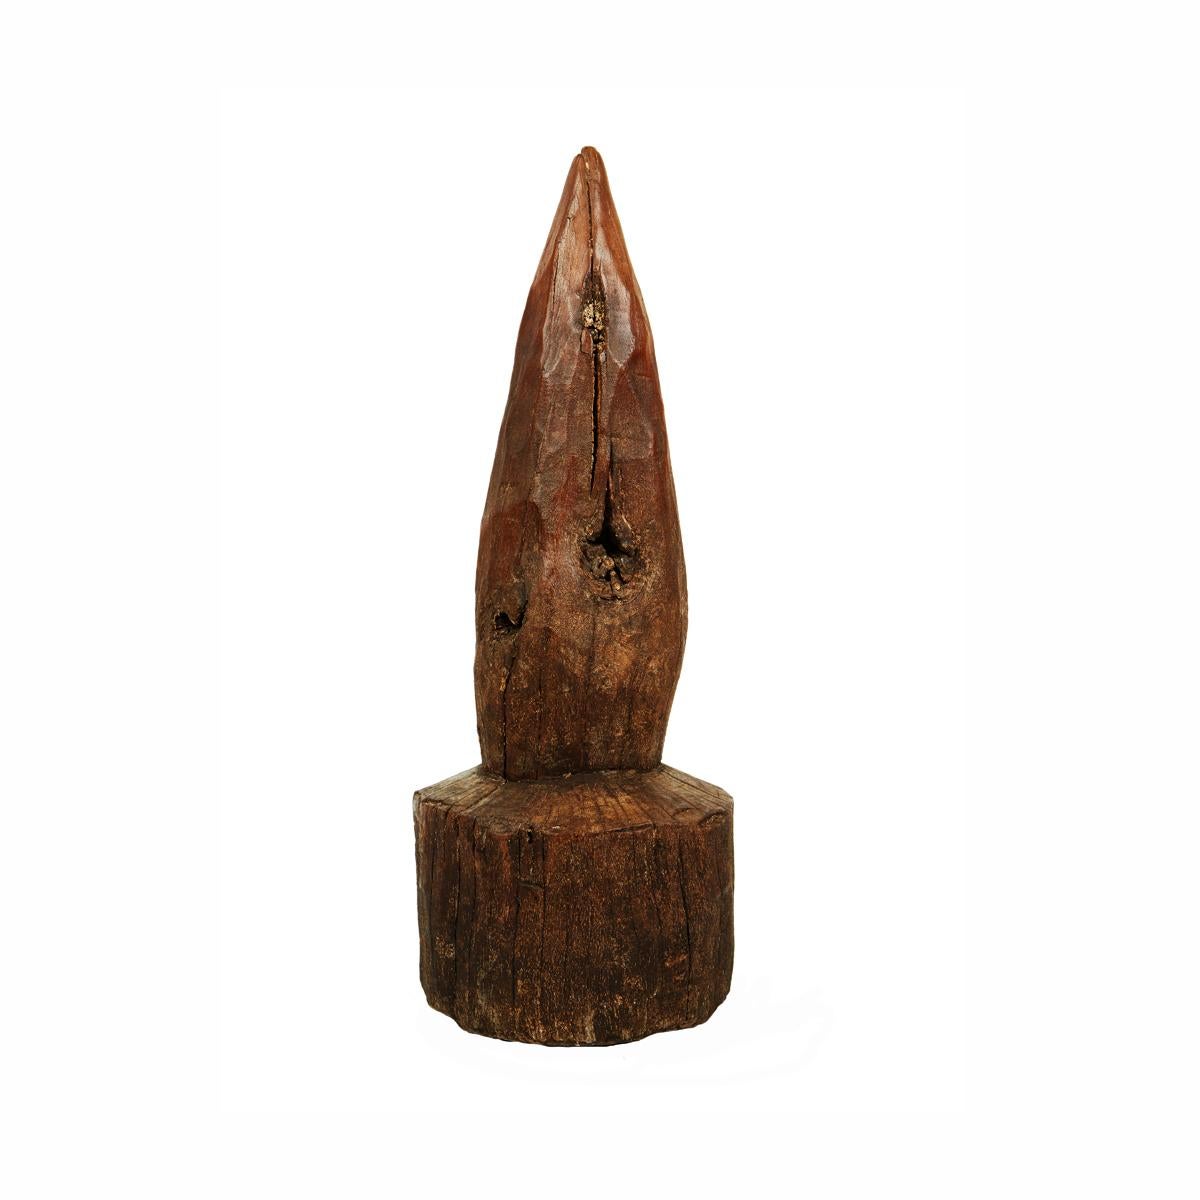 Ein einzelnes Stück aus massivem Mangoholz, handgeschnitzt zu einem stehenden Kegel, um 1960. Verwenden Sie sie als Türstopper oder in einer Gruppe für einen auffälligen Akzent in jedem rustikalen oder eklektischen Dekor, drinnen oder draußen. 

